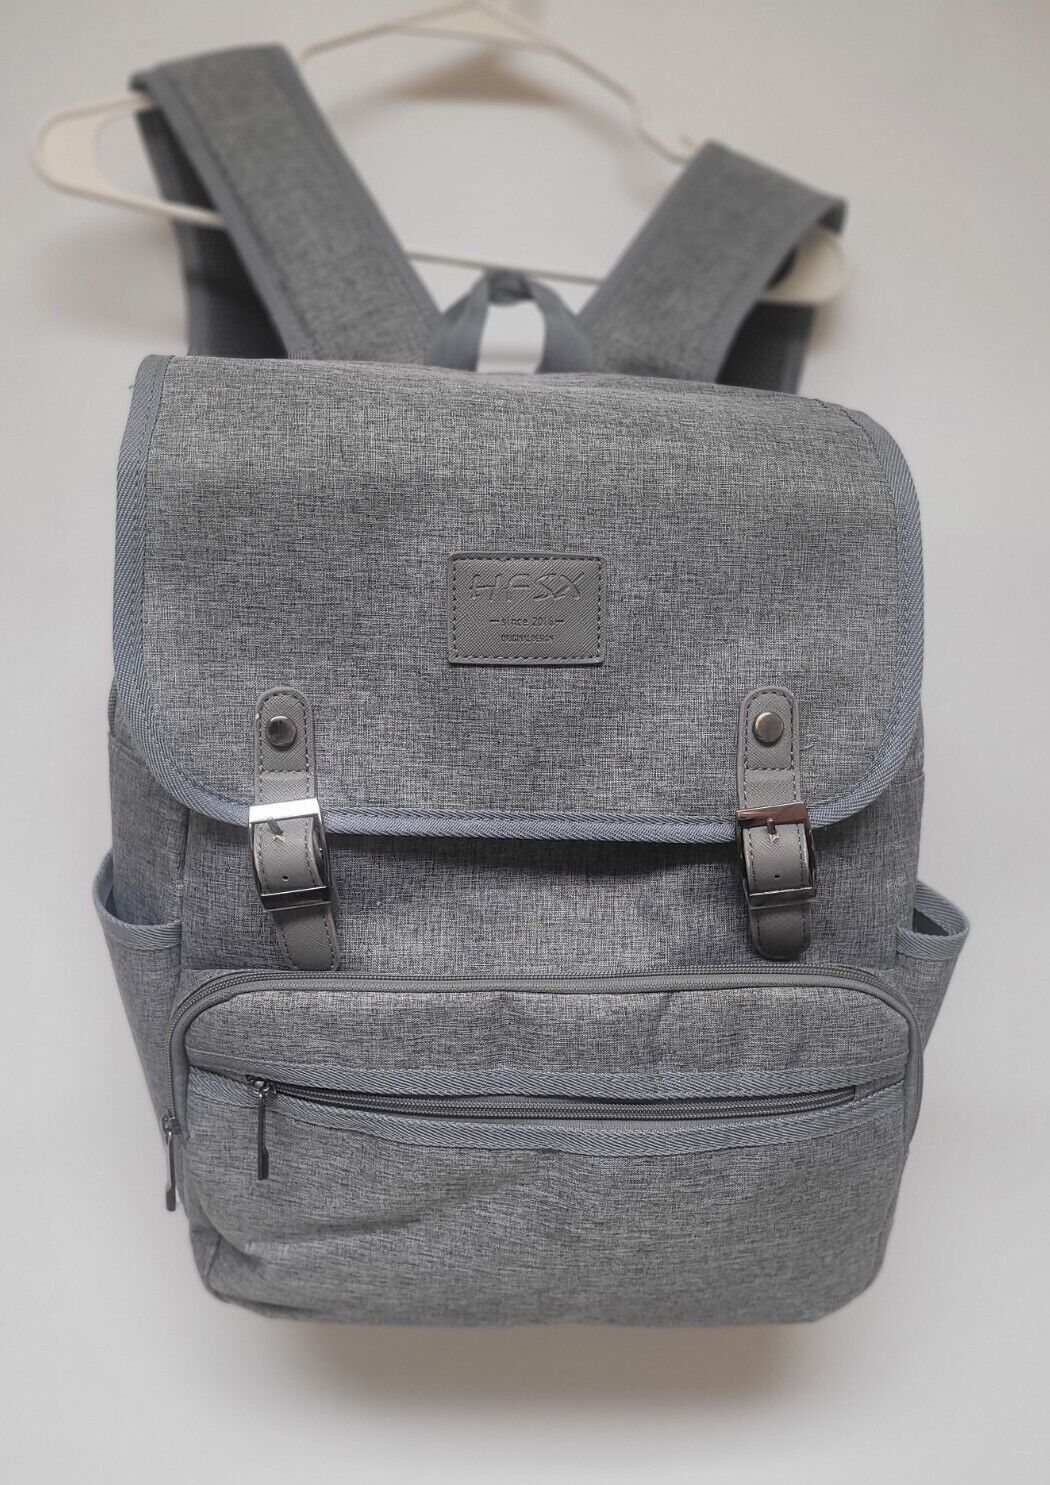 HFSX Backpack Bookbag Laptop Bag for Men Women Vintage Grey Back Pack EUC